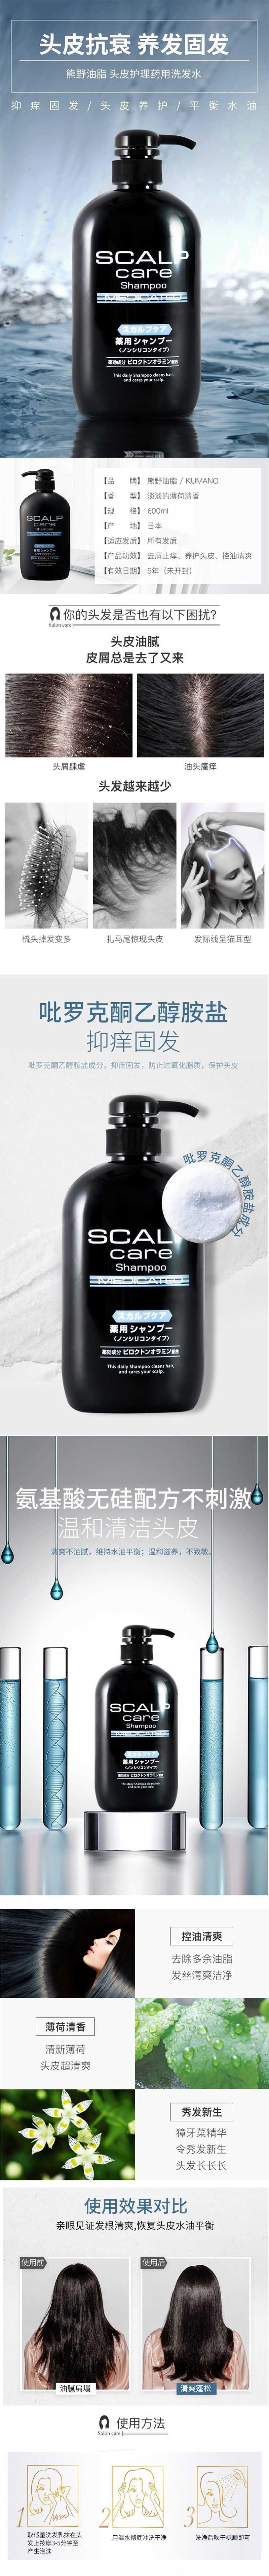 【日本直郵】KUMANOYUSHI熊野油脂 男士頭皮護理藥用洗髮精600ml